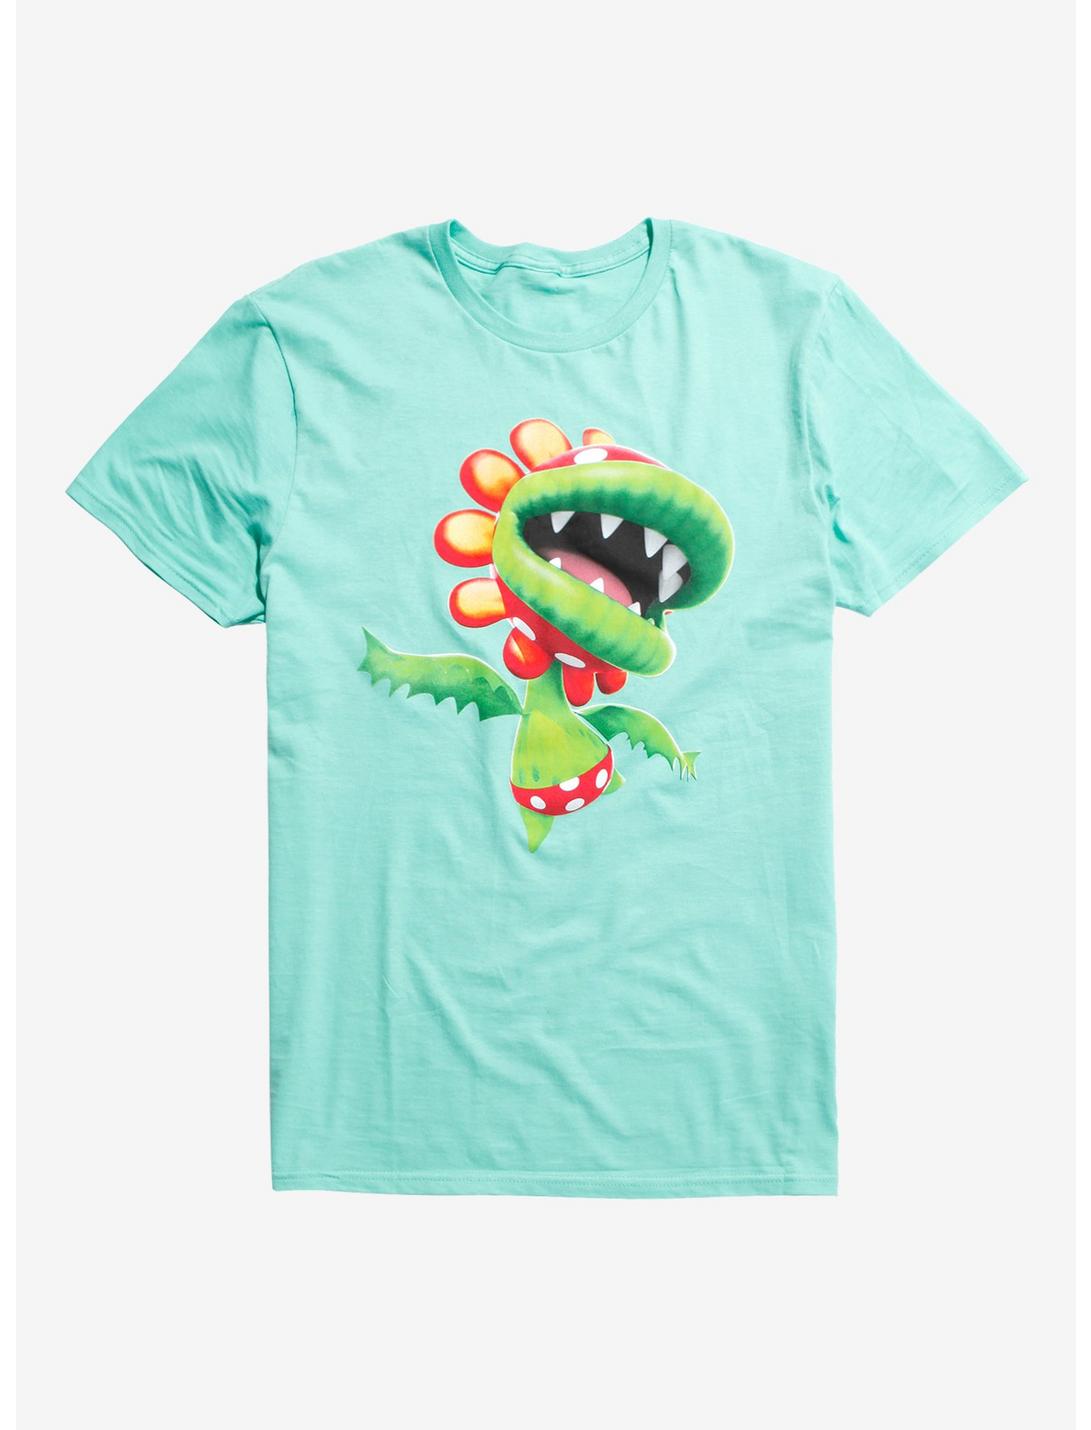 Super Mario Bros. Piranha Plant T-Shirt, MULTI, hi-res